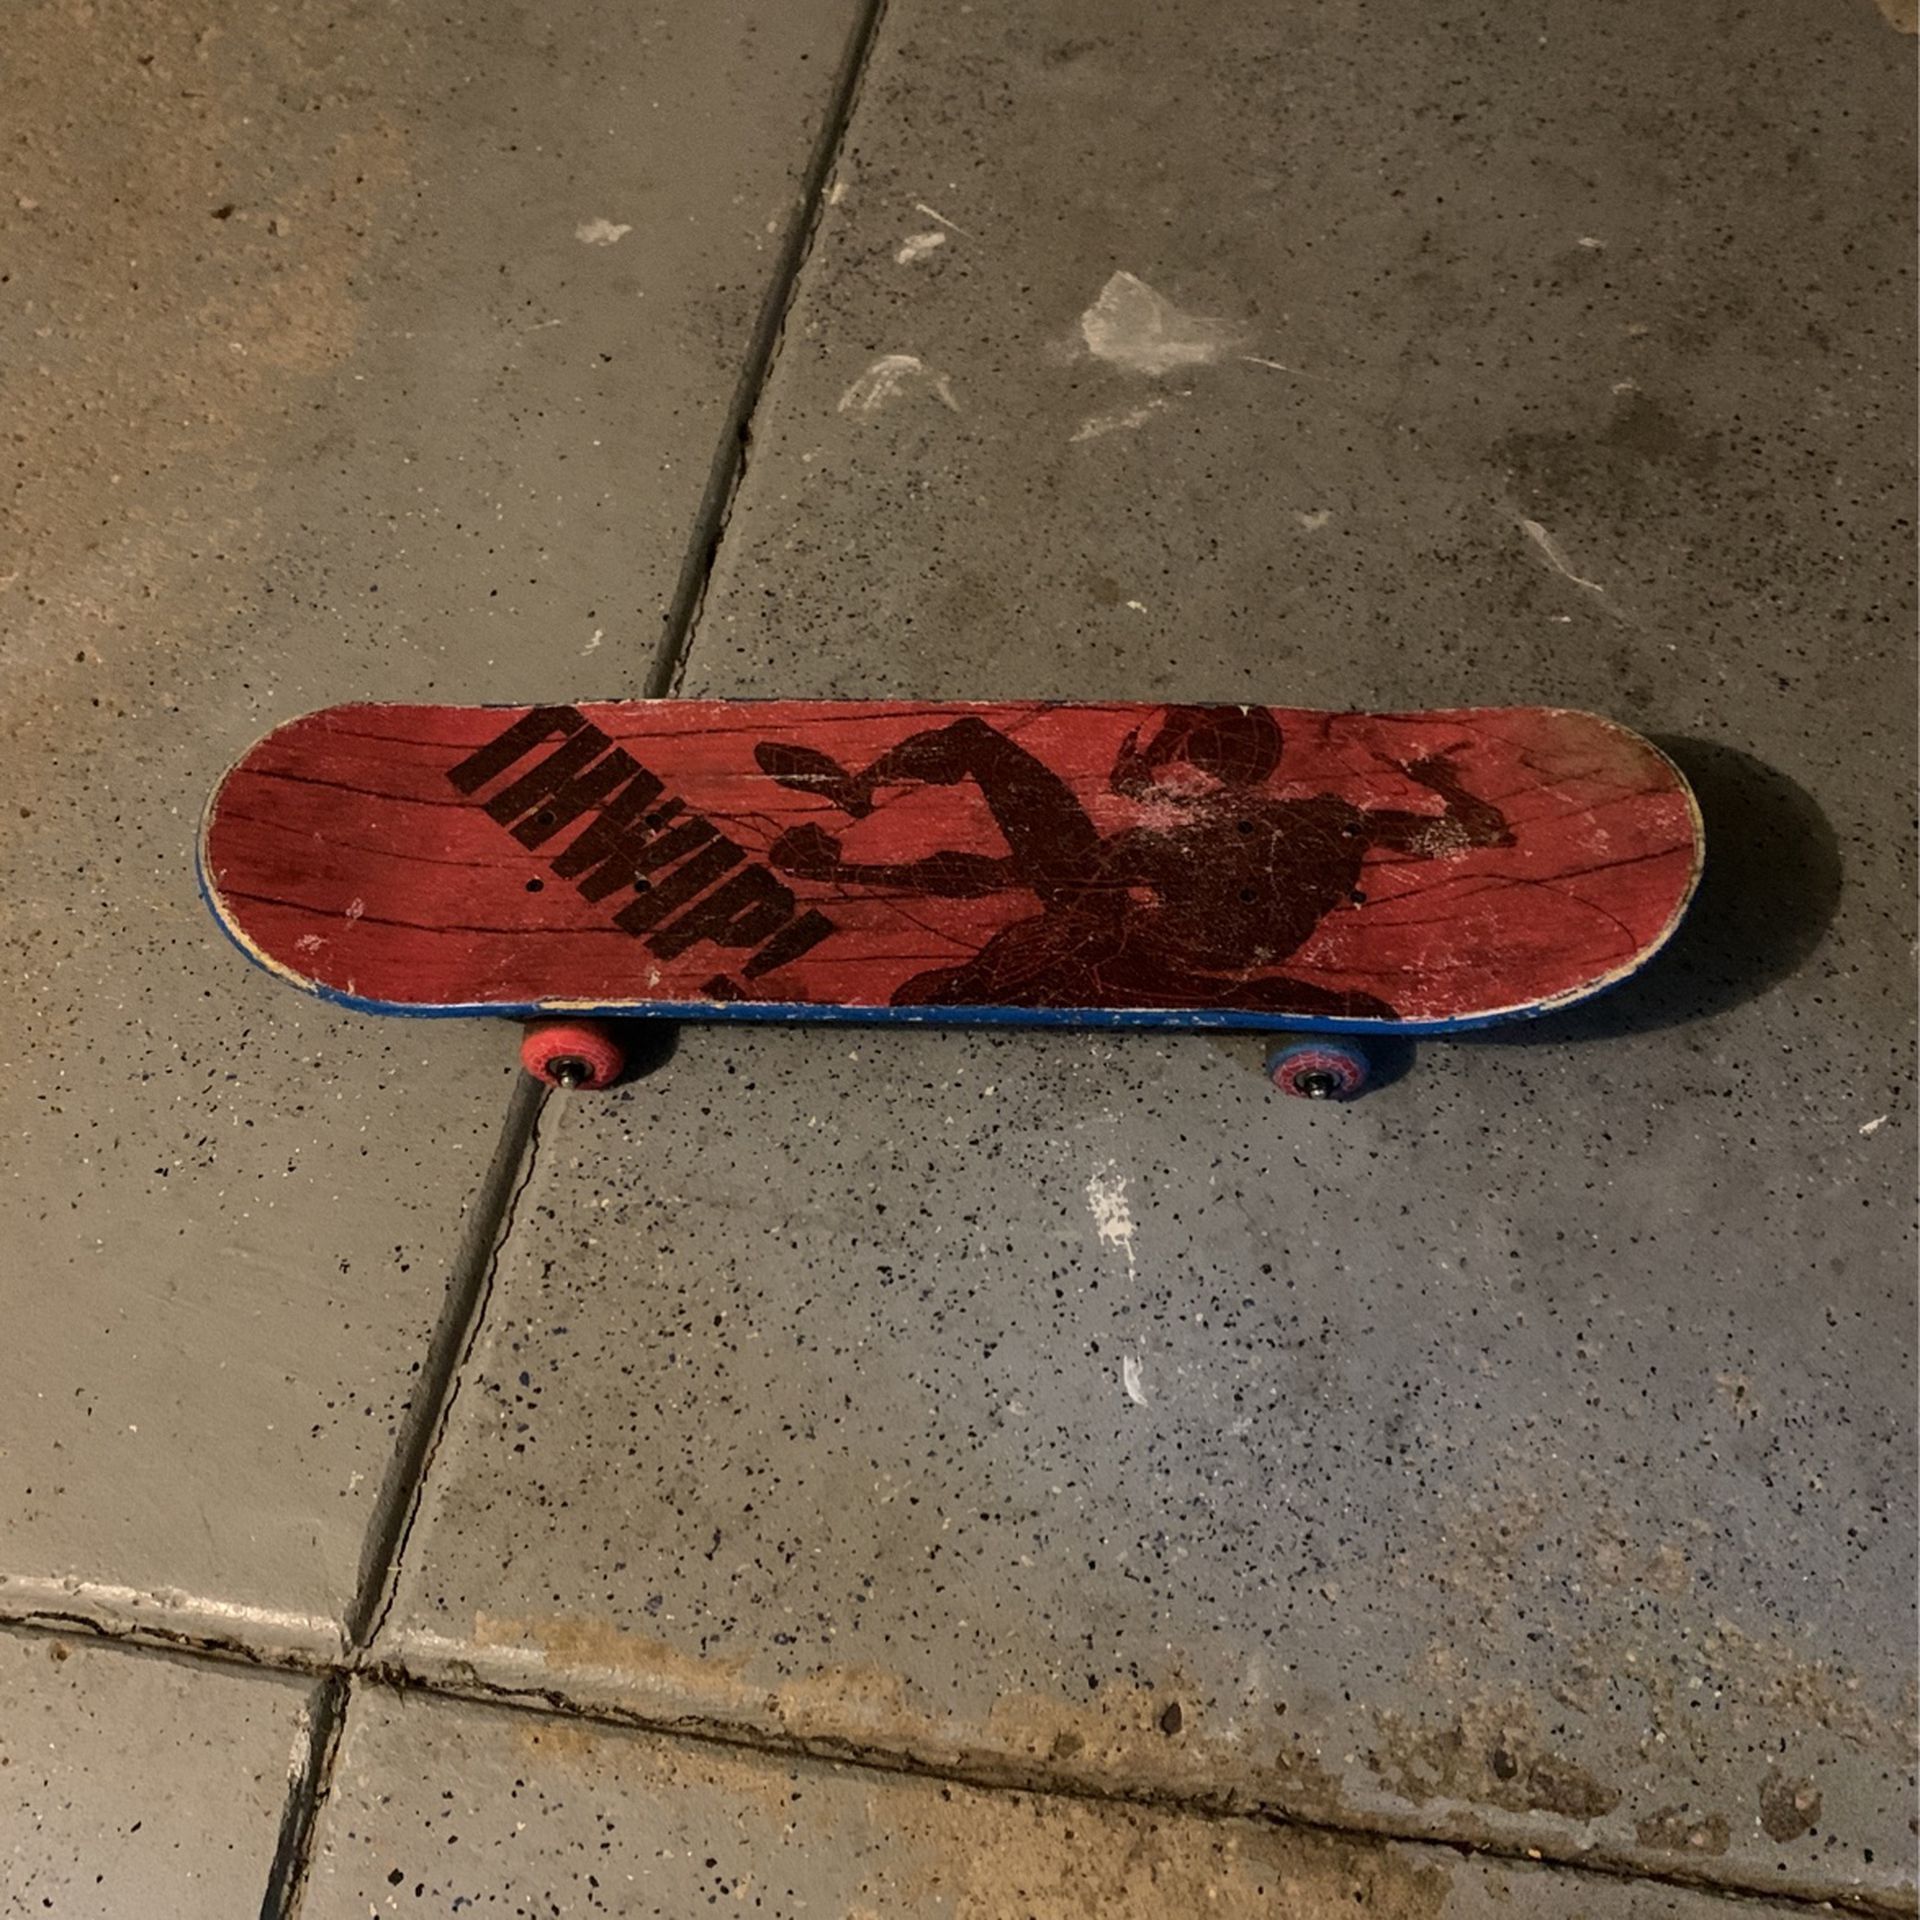 Skateboard 7 Yer Olds